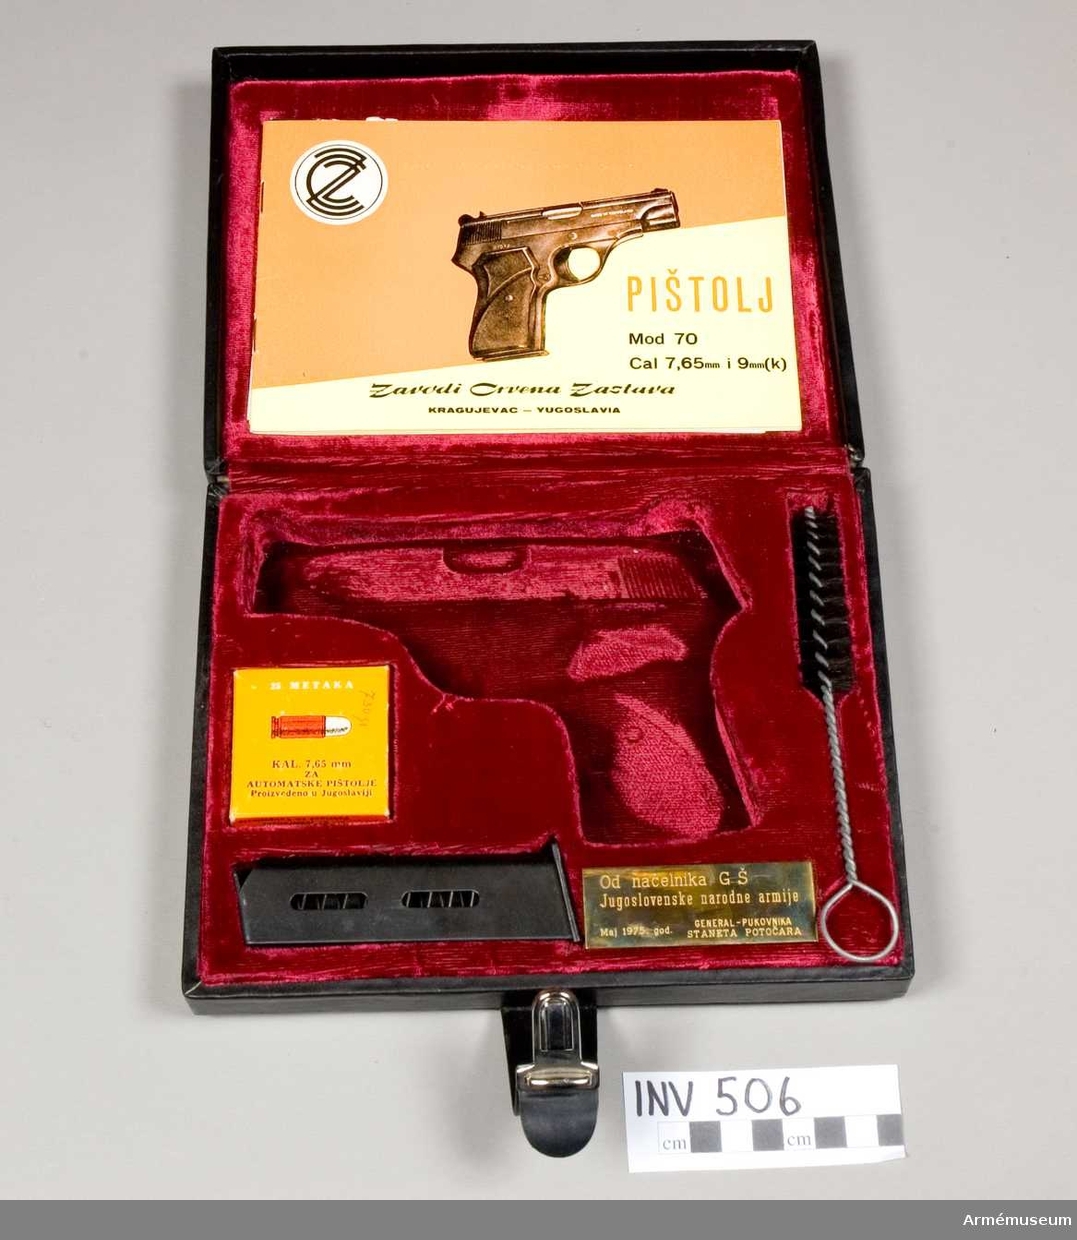 Halvautomatisk pistol m/1970.

Samhörande nr är 505-506. Etuiet innehåller:  1 st extra magasin, 1 st ask m 7,65 mm ammunition, 1 st borstviskare, 1 st bruksanvisning.